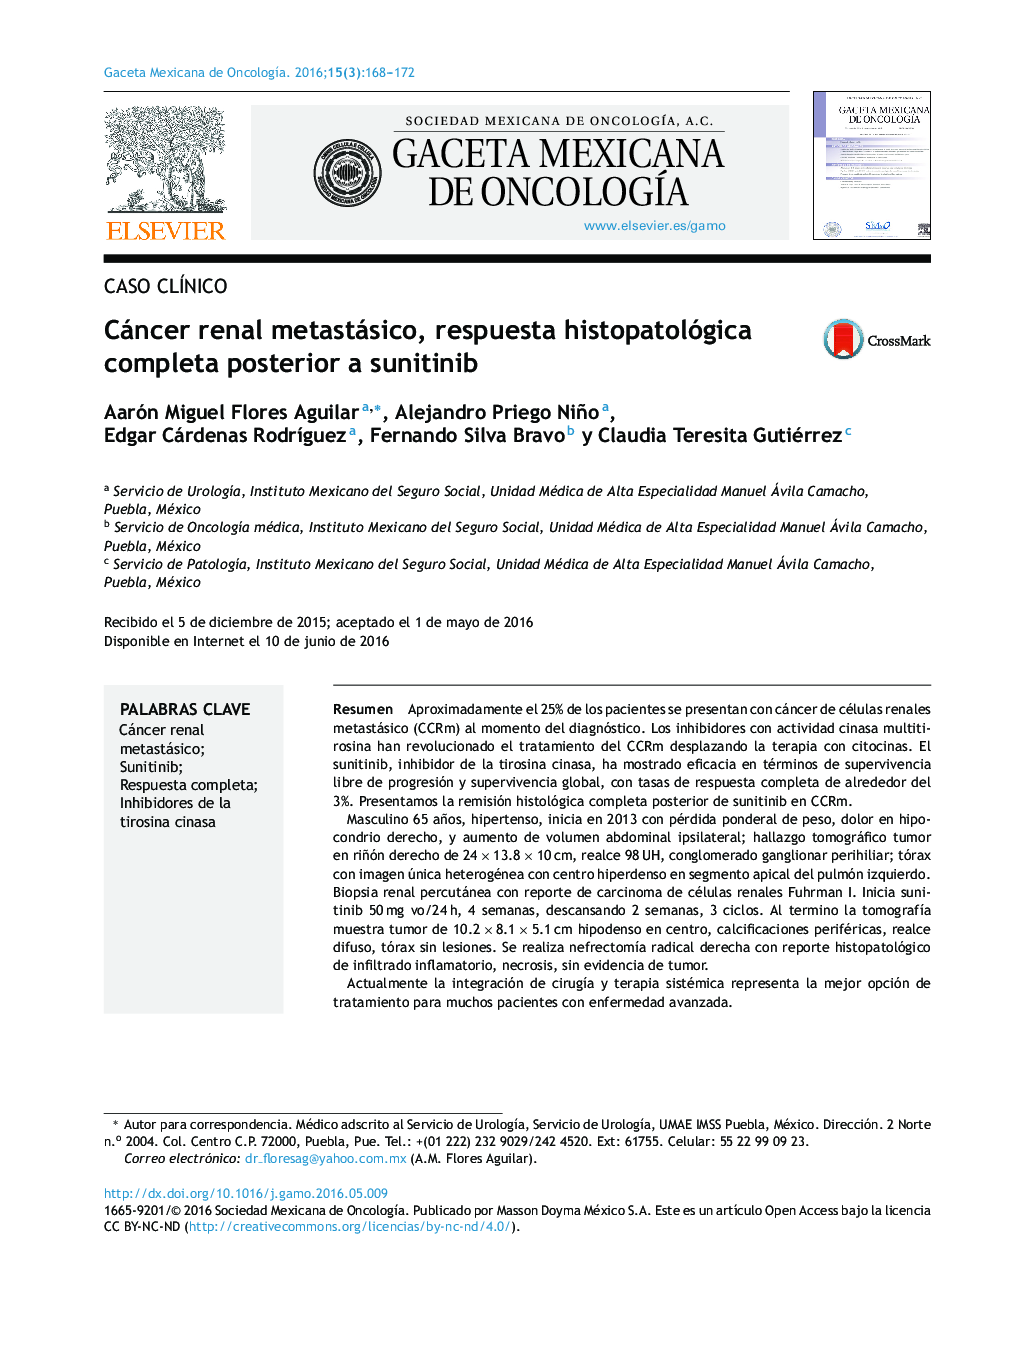 Cáncer renal metastásico, respuesta histopatológica completa posterior a sunitinib